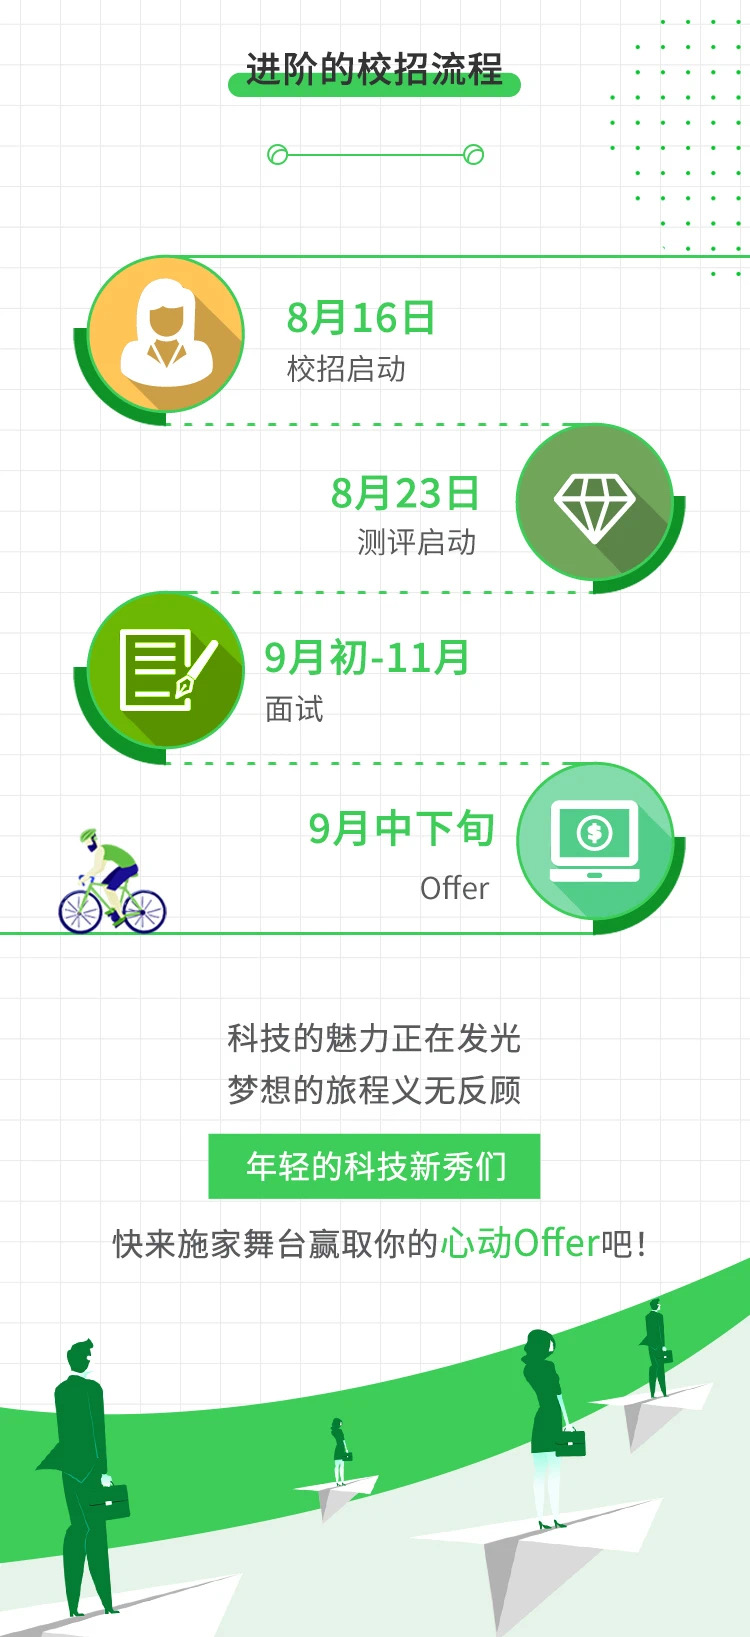 WeChat Image_20210924183154.jpg